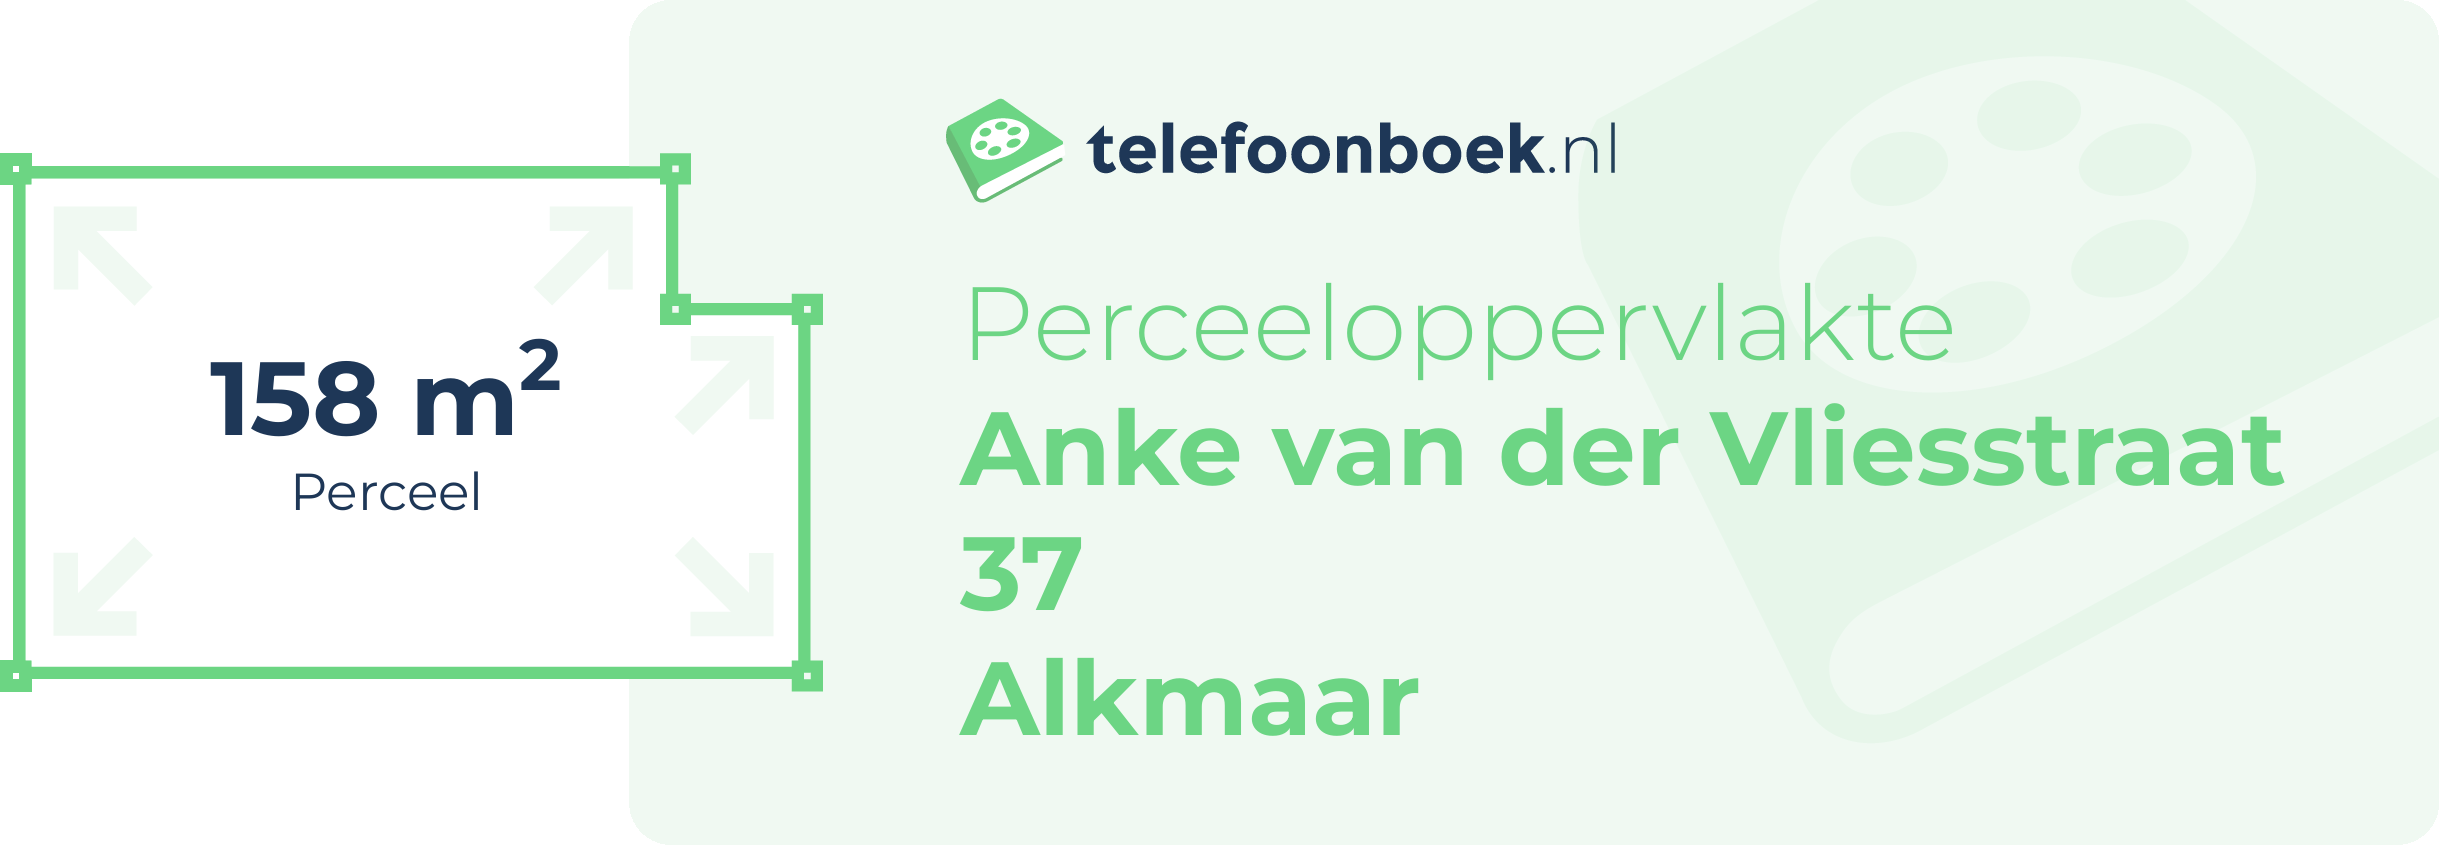 Perceeloppervlakte Anke Van Der Vliesstraat 37 Alkmaar